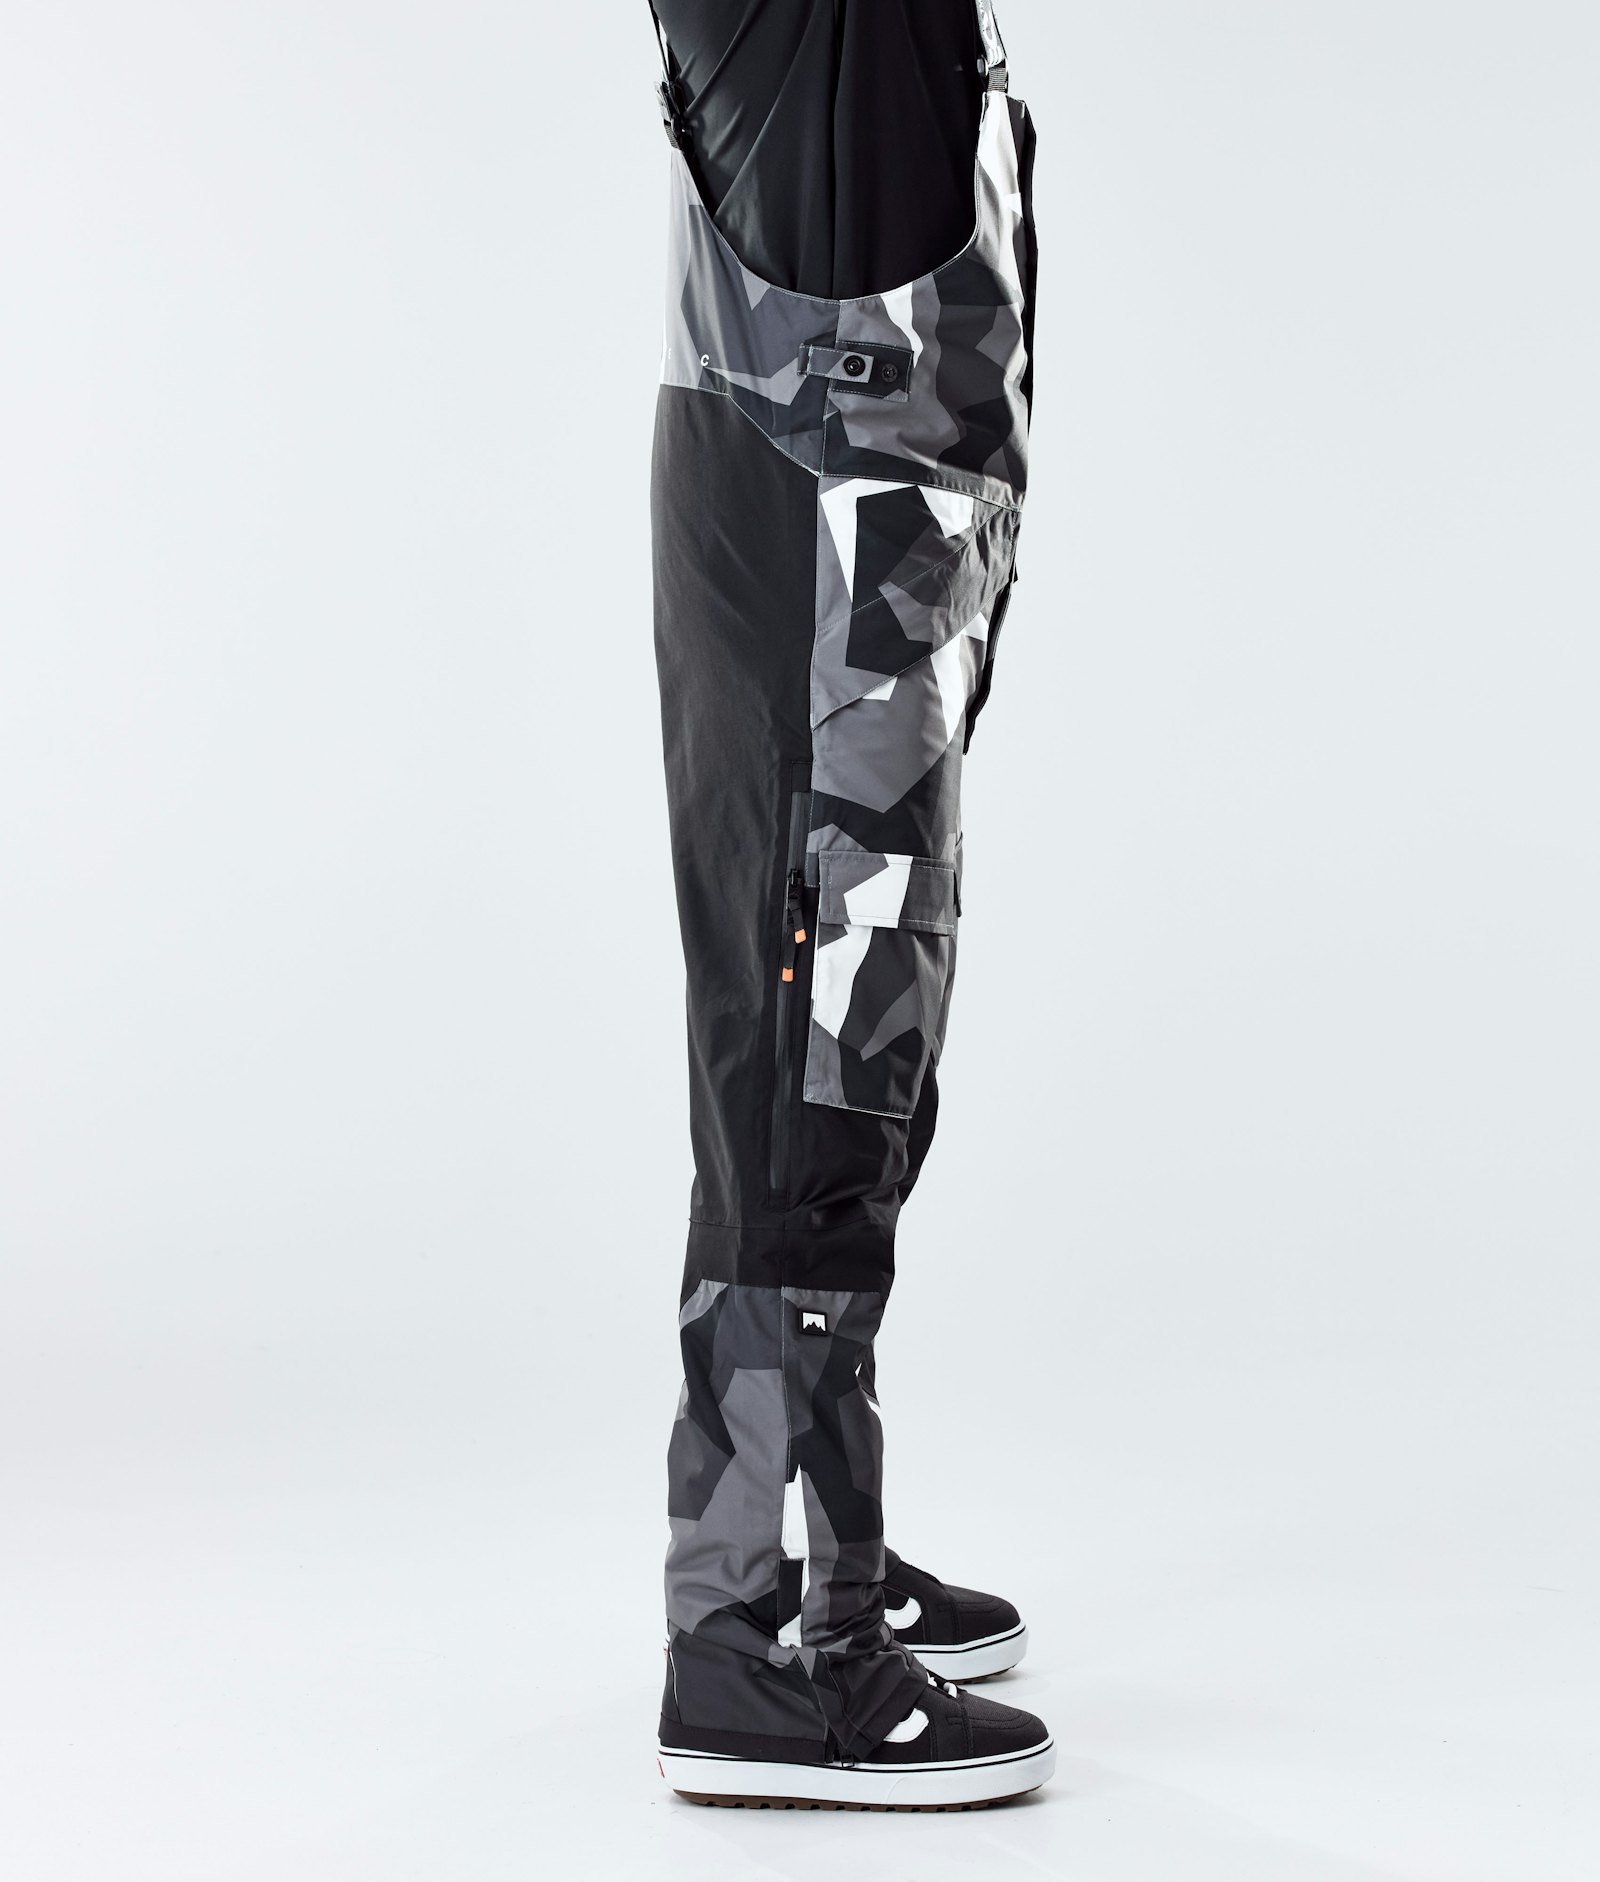 Fawk 2020 Pantaloni Snowboard Uomo Arctic Camo/Black, Immagine 2 di 6